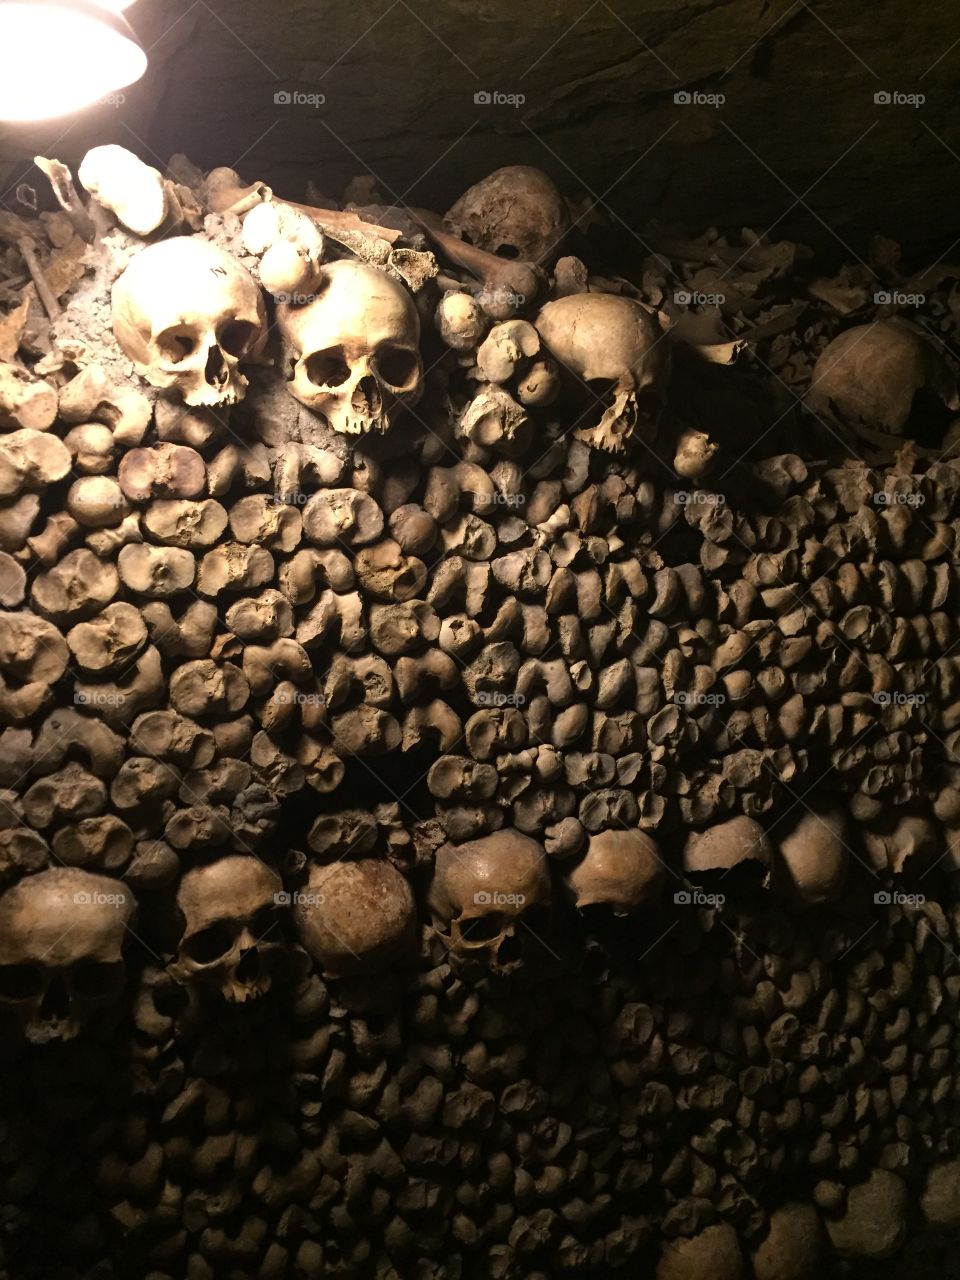 Paris France catacomb, bones and skulls 